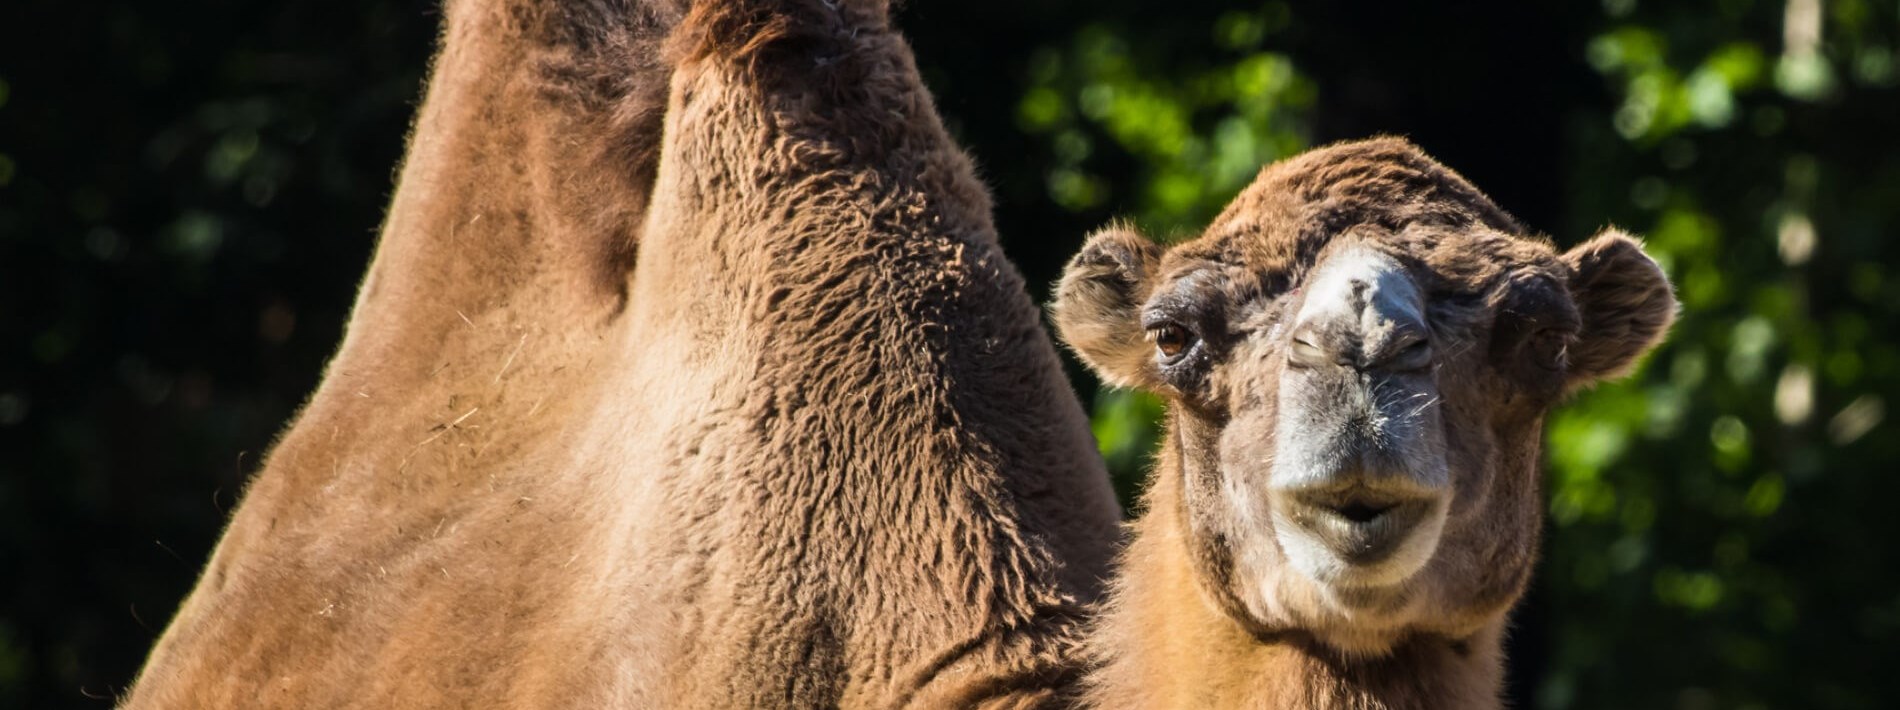 close up of a camel face